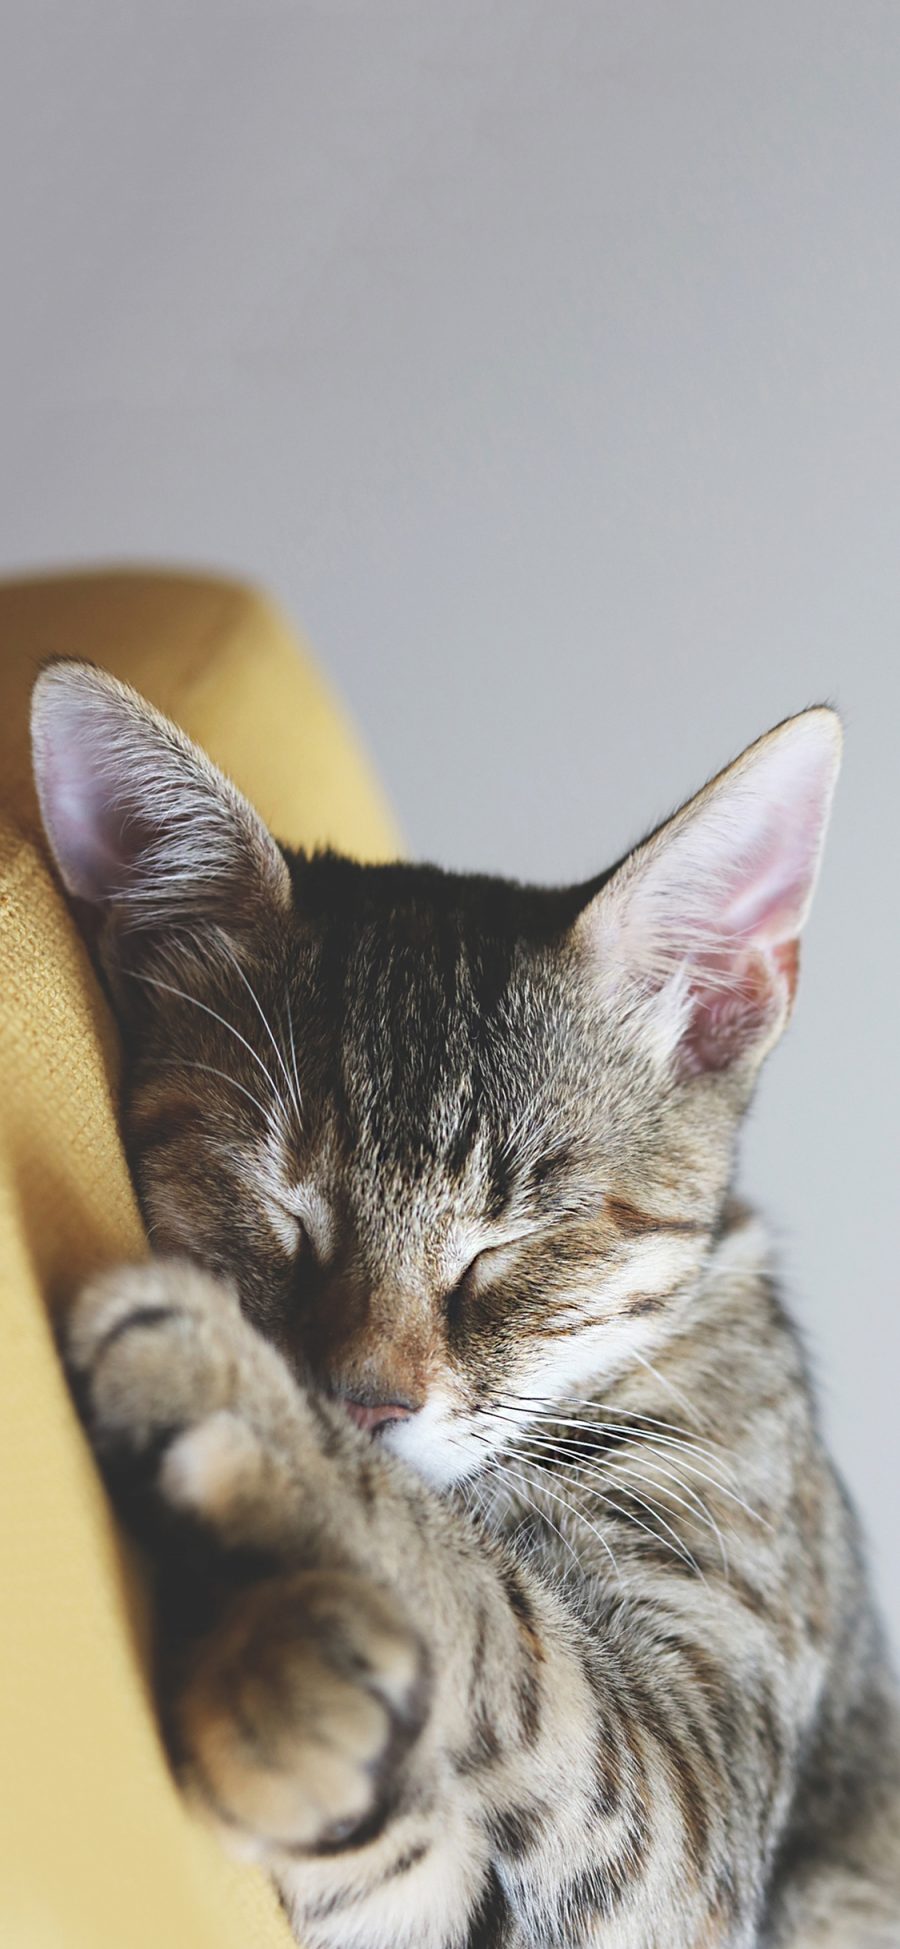 [2436×1125]宠物猫 喵星人 睡觉 可爱 苹果手机壁纸图片